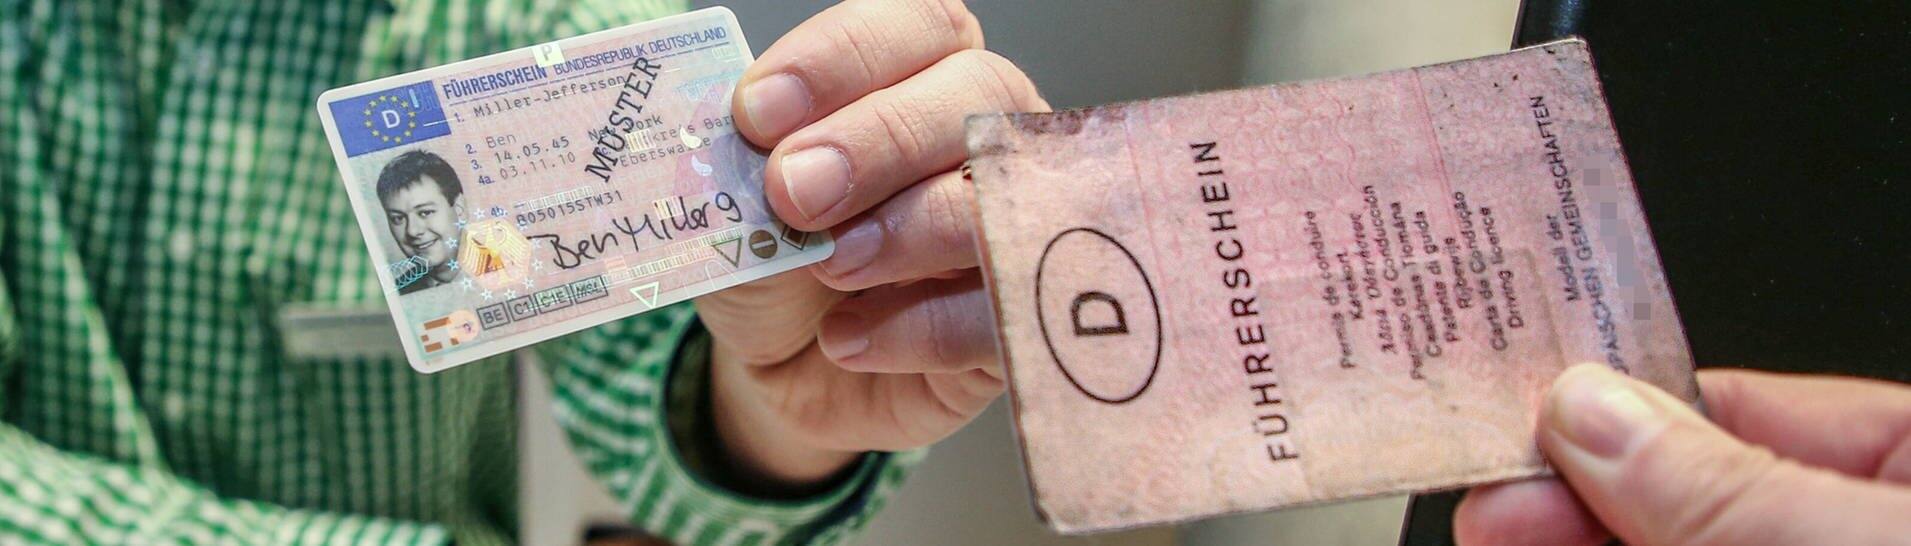 Ein alter Führerschein wird gegen einen neuen eingetauscht. (Foto: IMAGO, imago images/Andreas Gora)